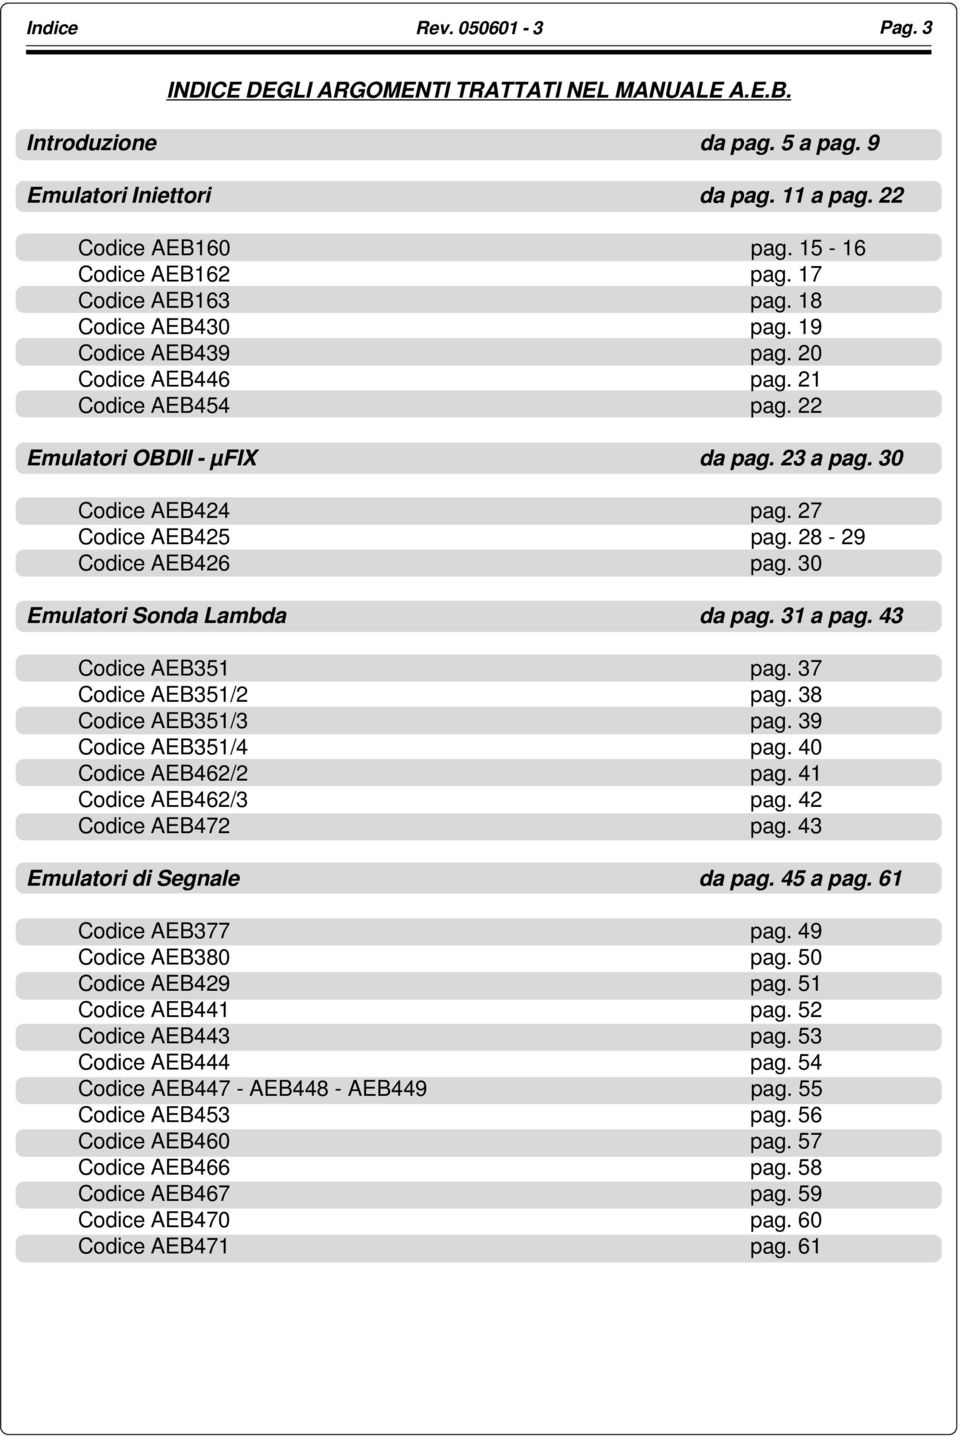 28-29 Codice AEB426 pag. 30 Emulatori Sonda Lambda da pag. 31 a pag. 43 Codice AEB351 pag. 37 Codice AEB351/2 pag. 38 Codice AEB351/3 pag. 39 Codice AEB351/4 pag. 40 Codice AEB462/2 pag.